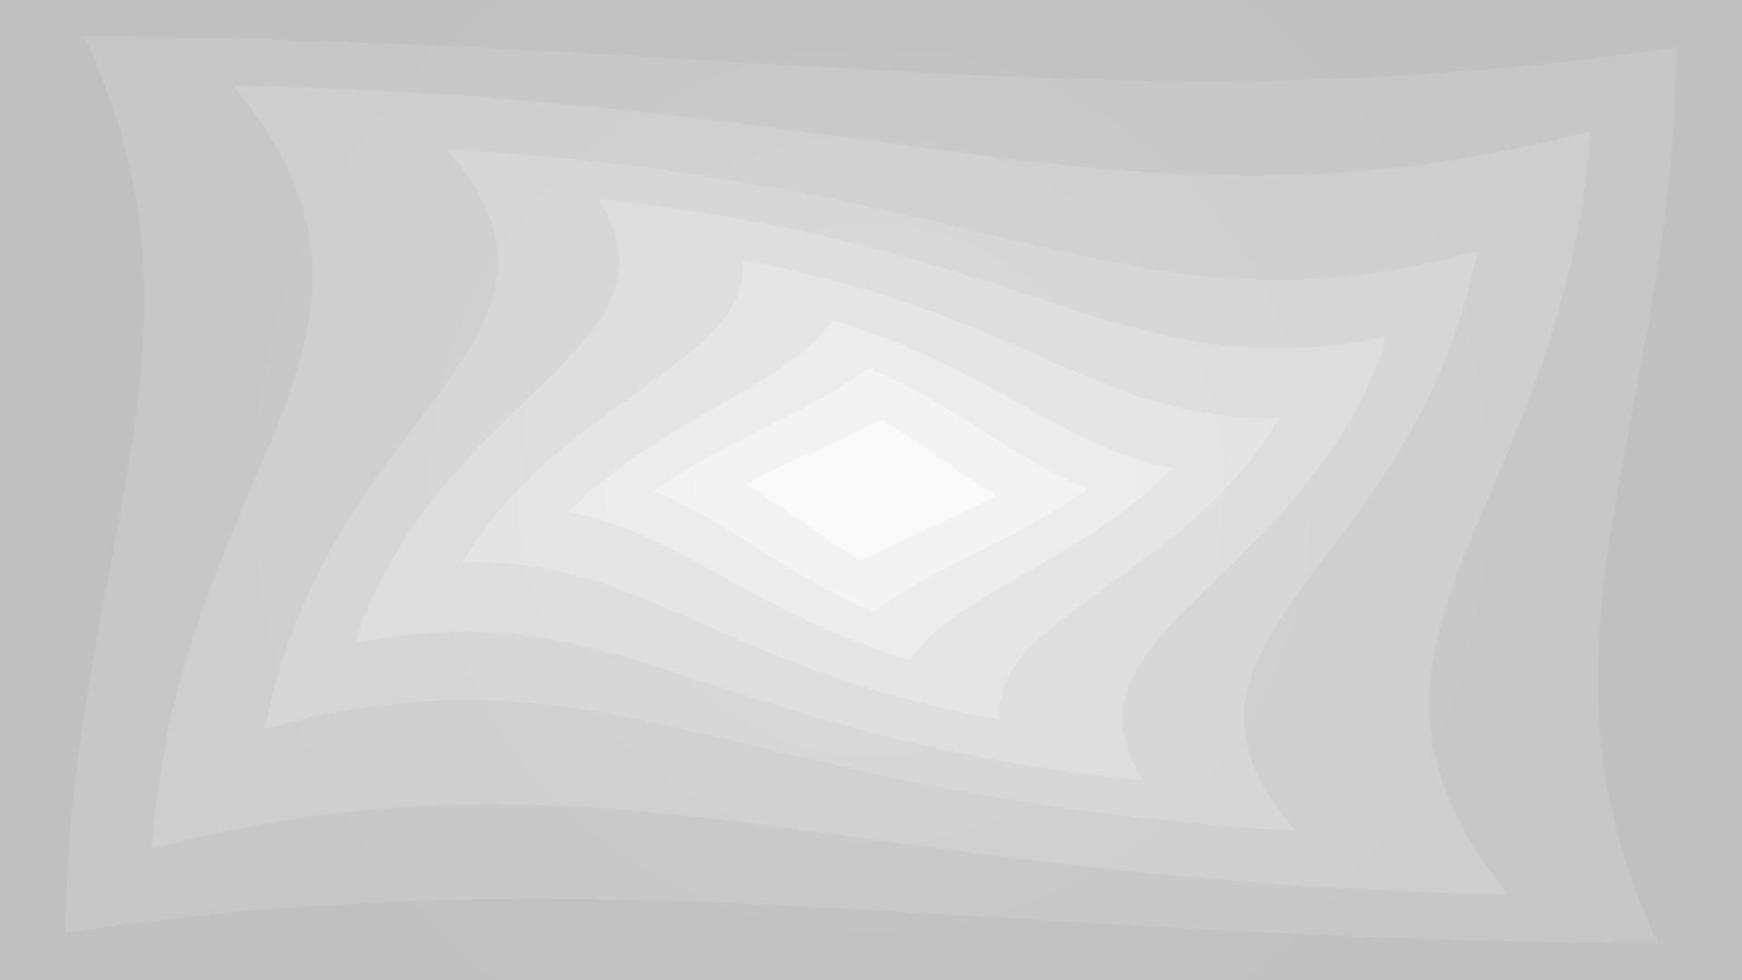 vector illustratie abstract wit en grijs patroon naadloos isometrische 3d vorm, rechthoekig modern behang Golf